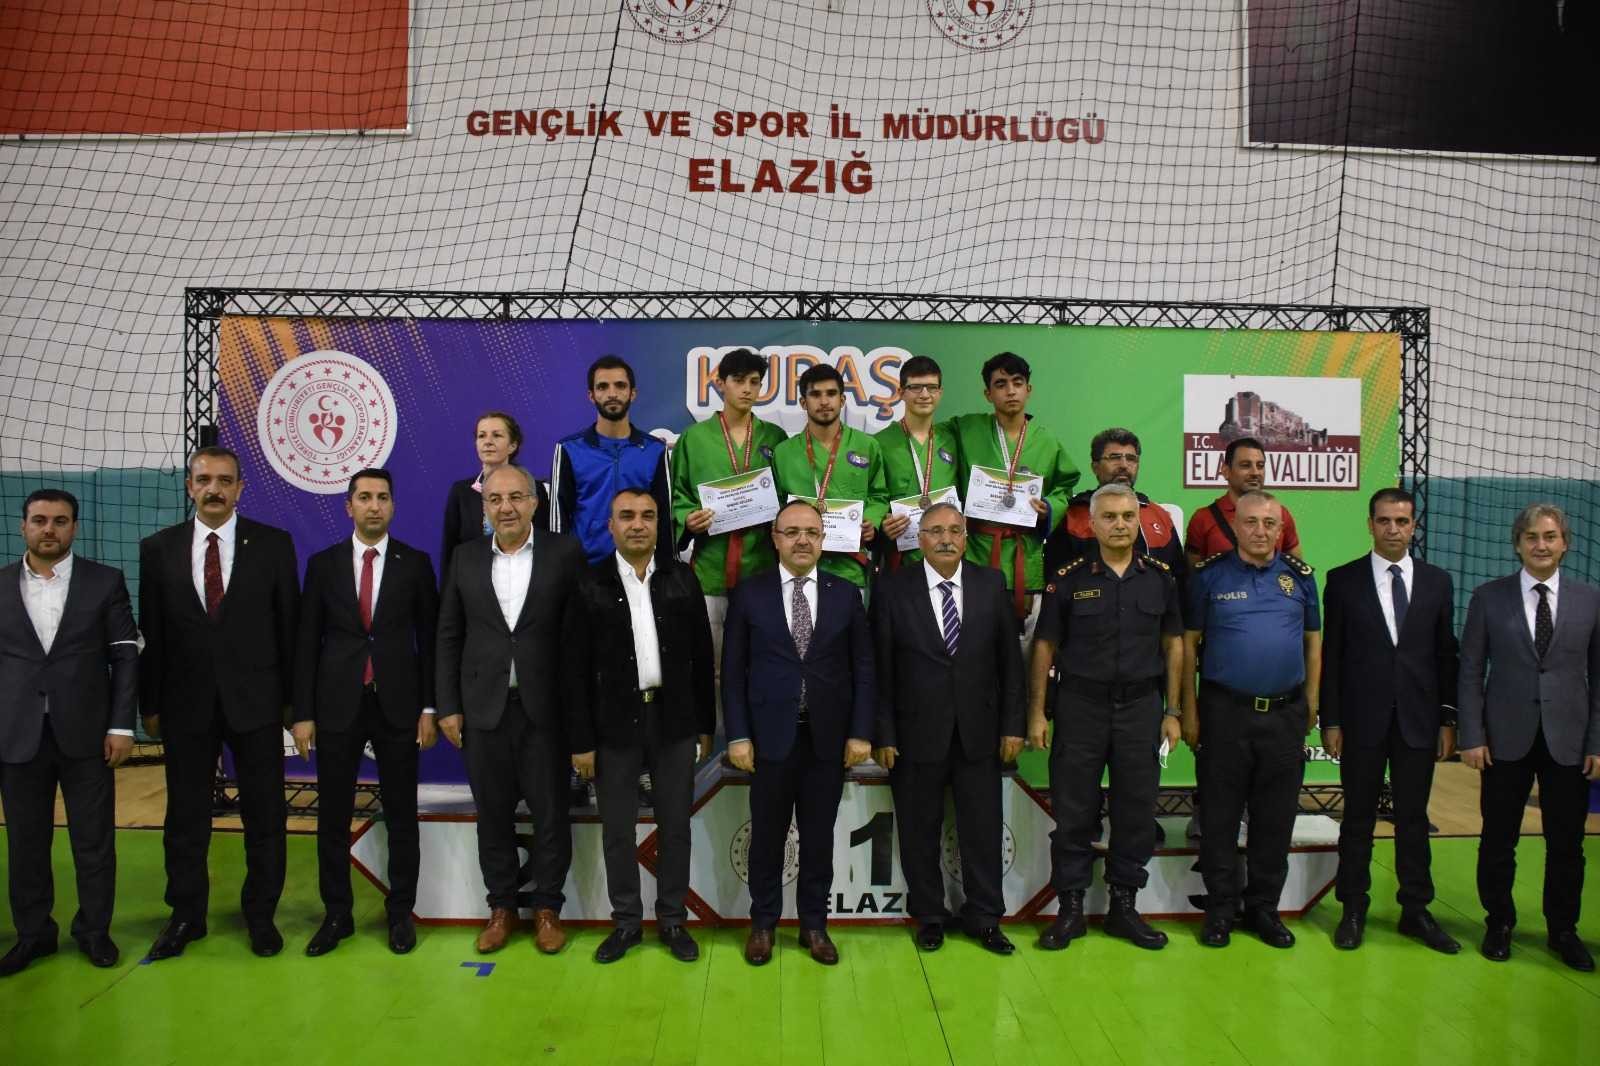 Kuraş Türkiye Şampiyonası Elazığ’da başladı #elazig